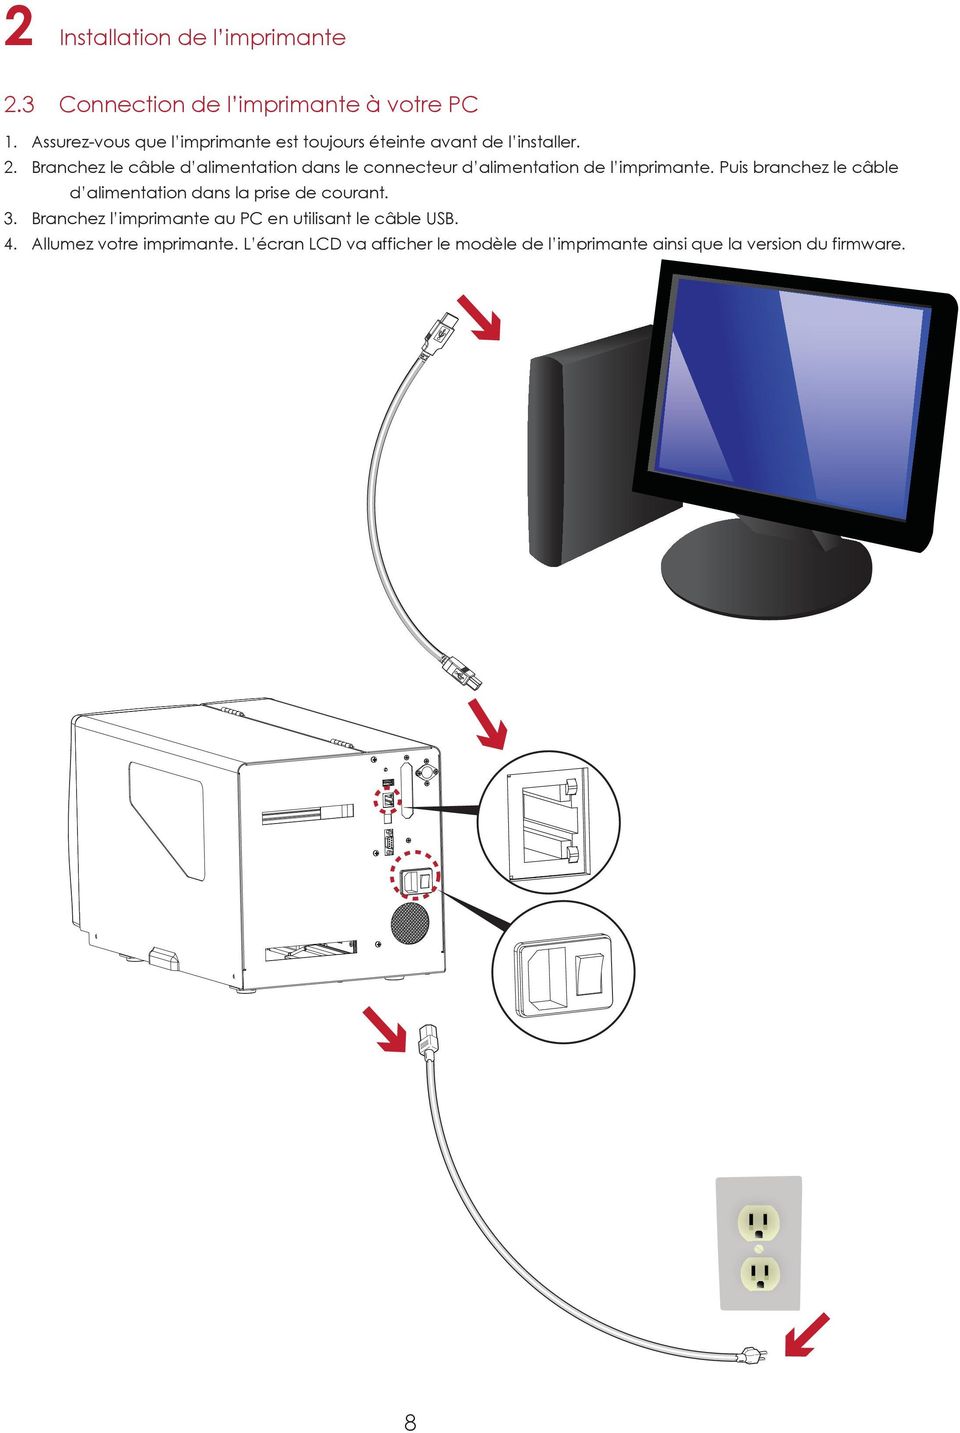 Branchez le câble d alimentation dans le connecteur d alimentation de l imprimante.